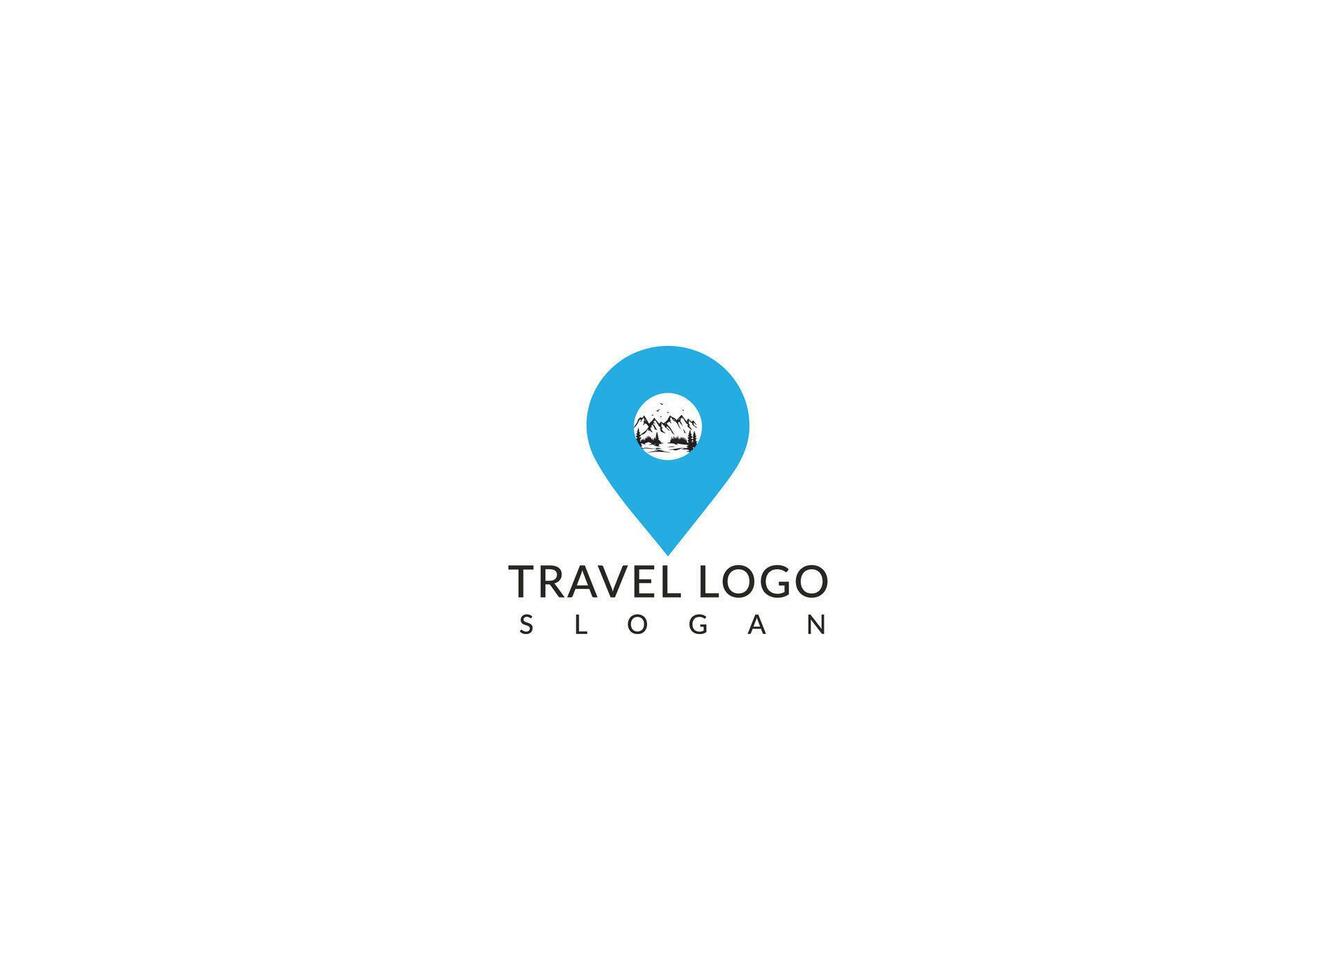 Vektor Logo Design Vorlagen zum Karte Punkt mit Fluggesellschaften, Flugzeug Eintrittskarten, Reise Agenturen - - Flugzeuge und Embleme